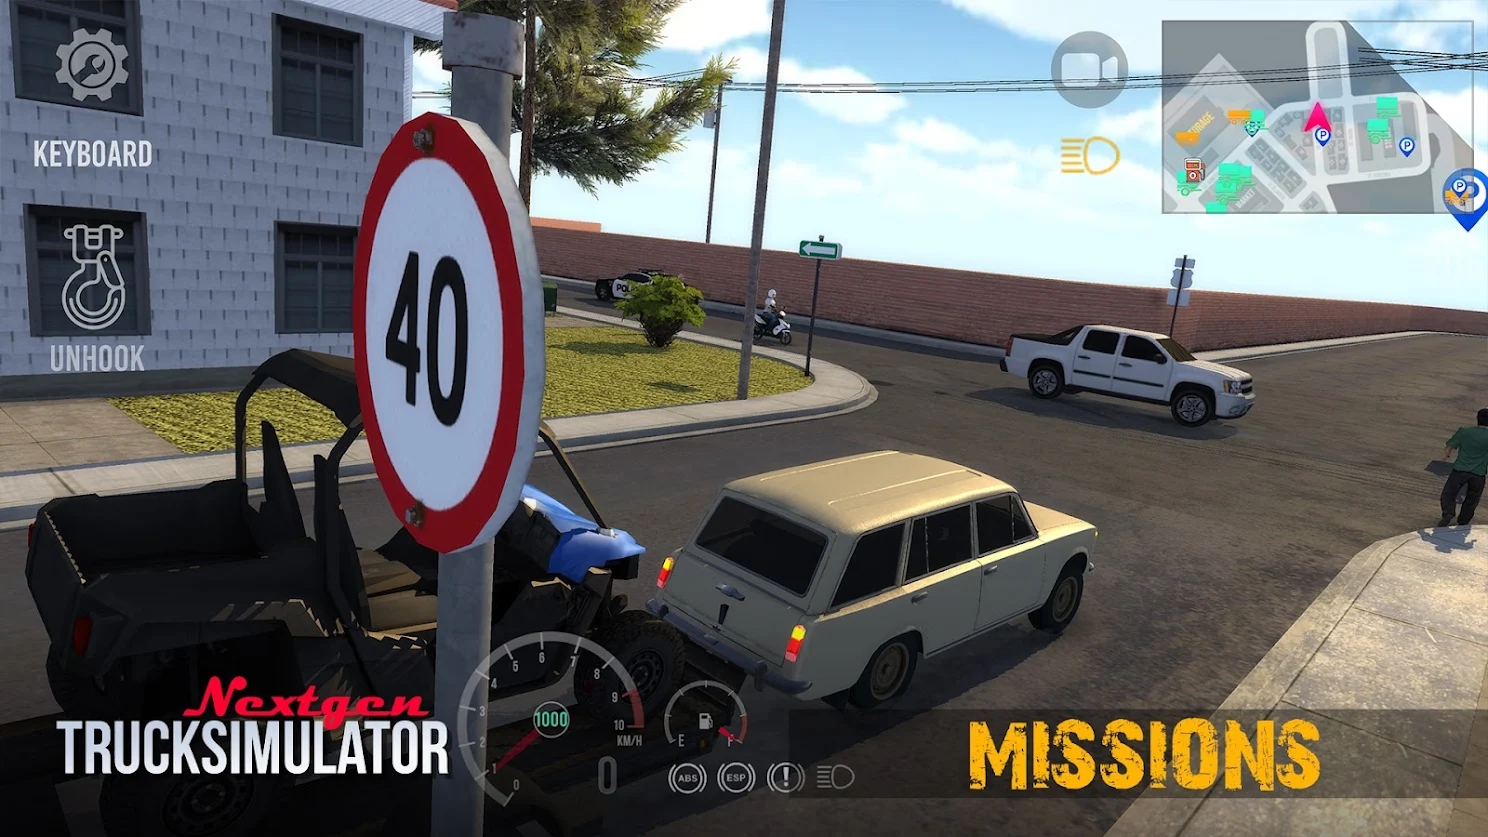 Nextgen卡车模拟器游戏下载,Nextgen卡车模拟器游戏中文版 v0.16